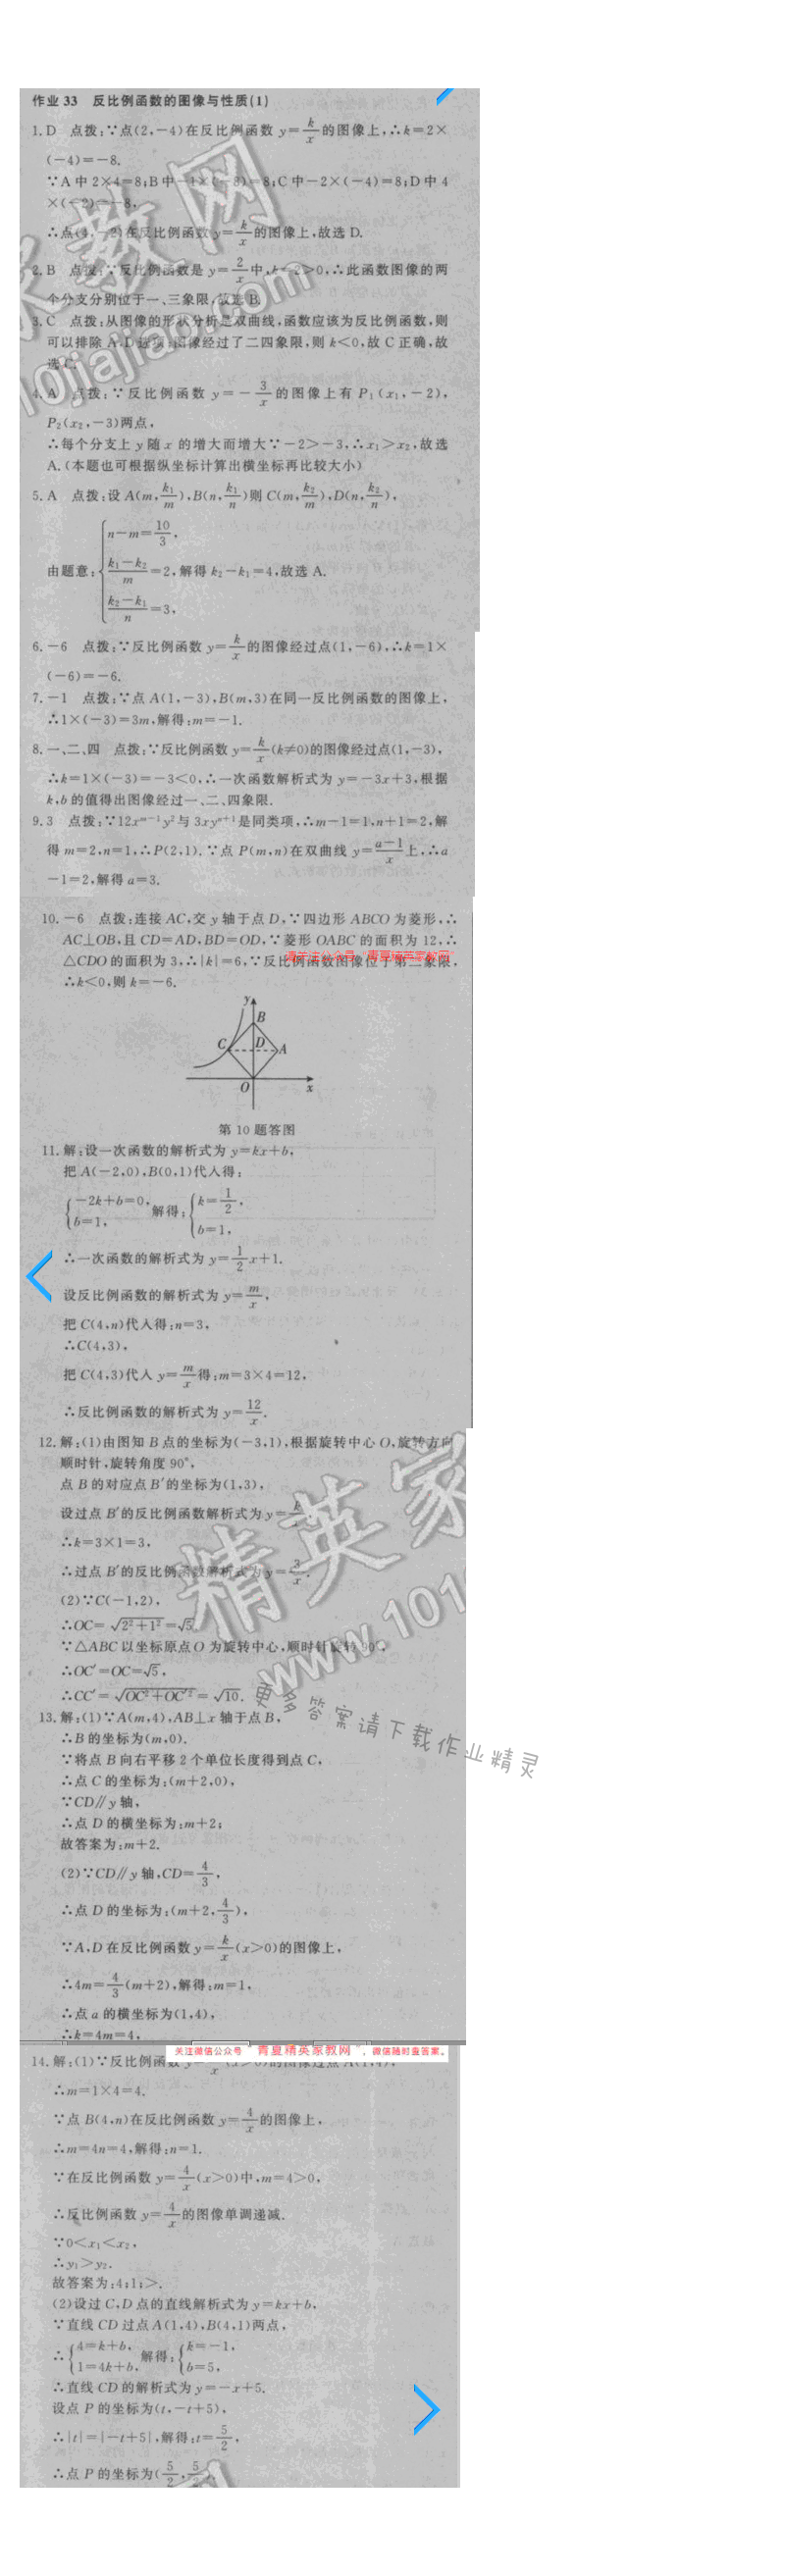 2016年启东中学作业本八年级数学下册江苏版 第十一章 作业33